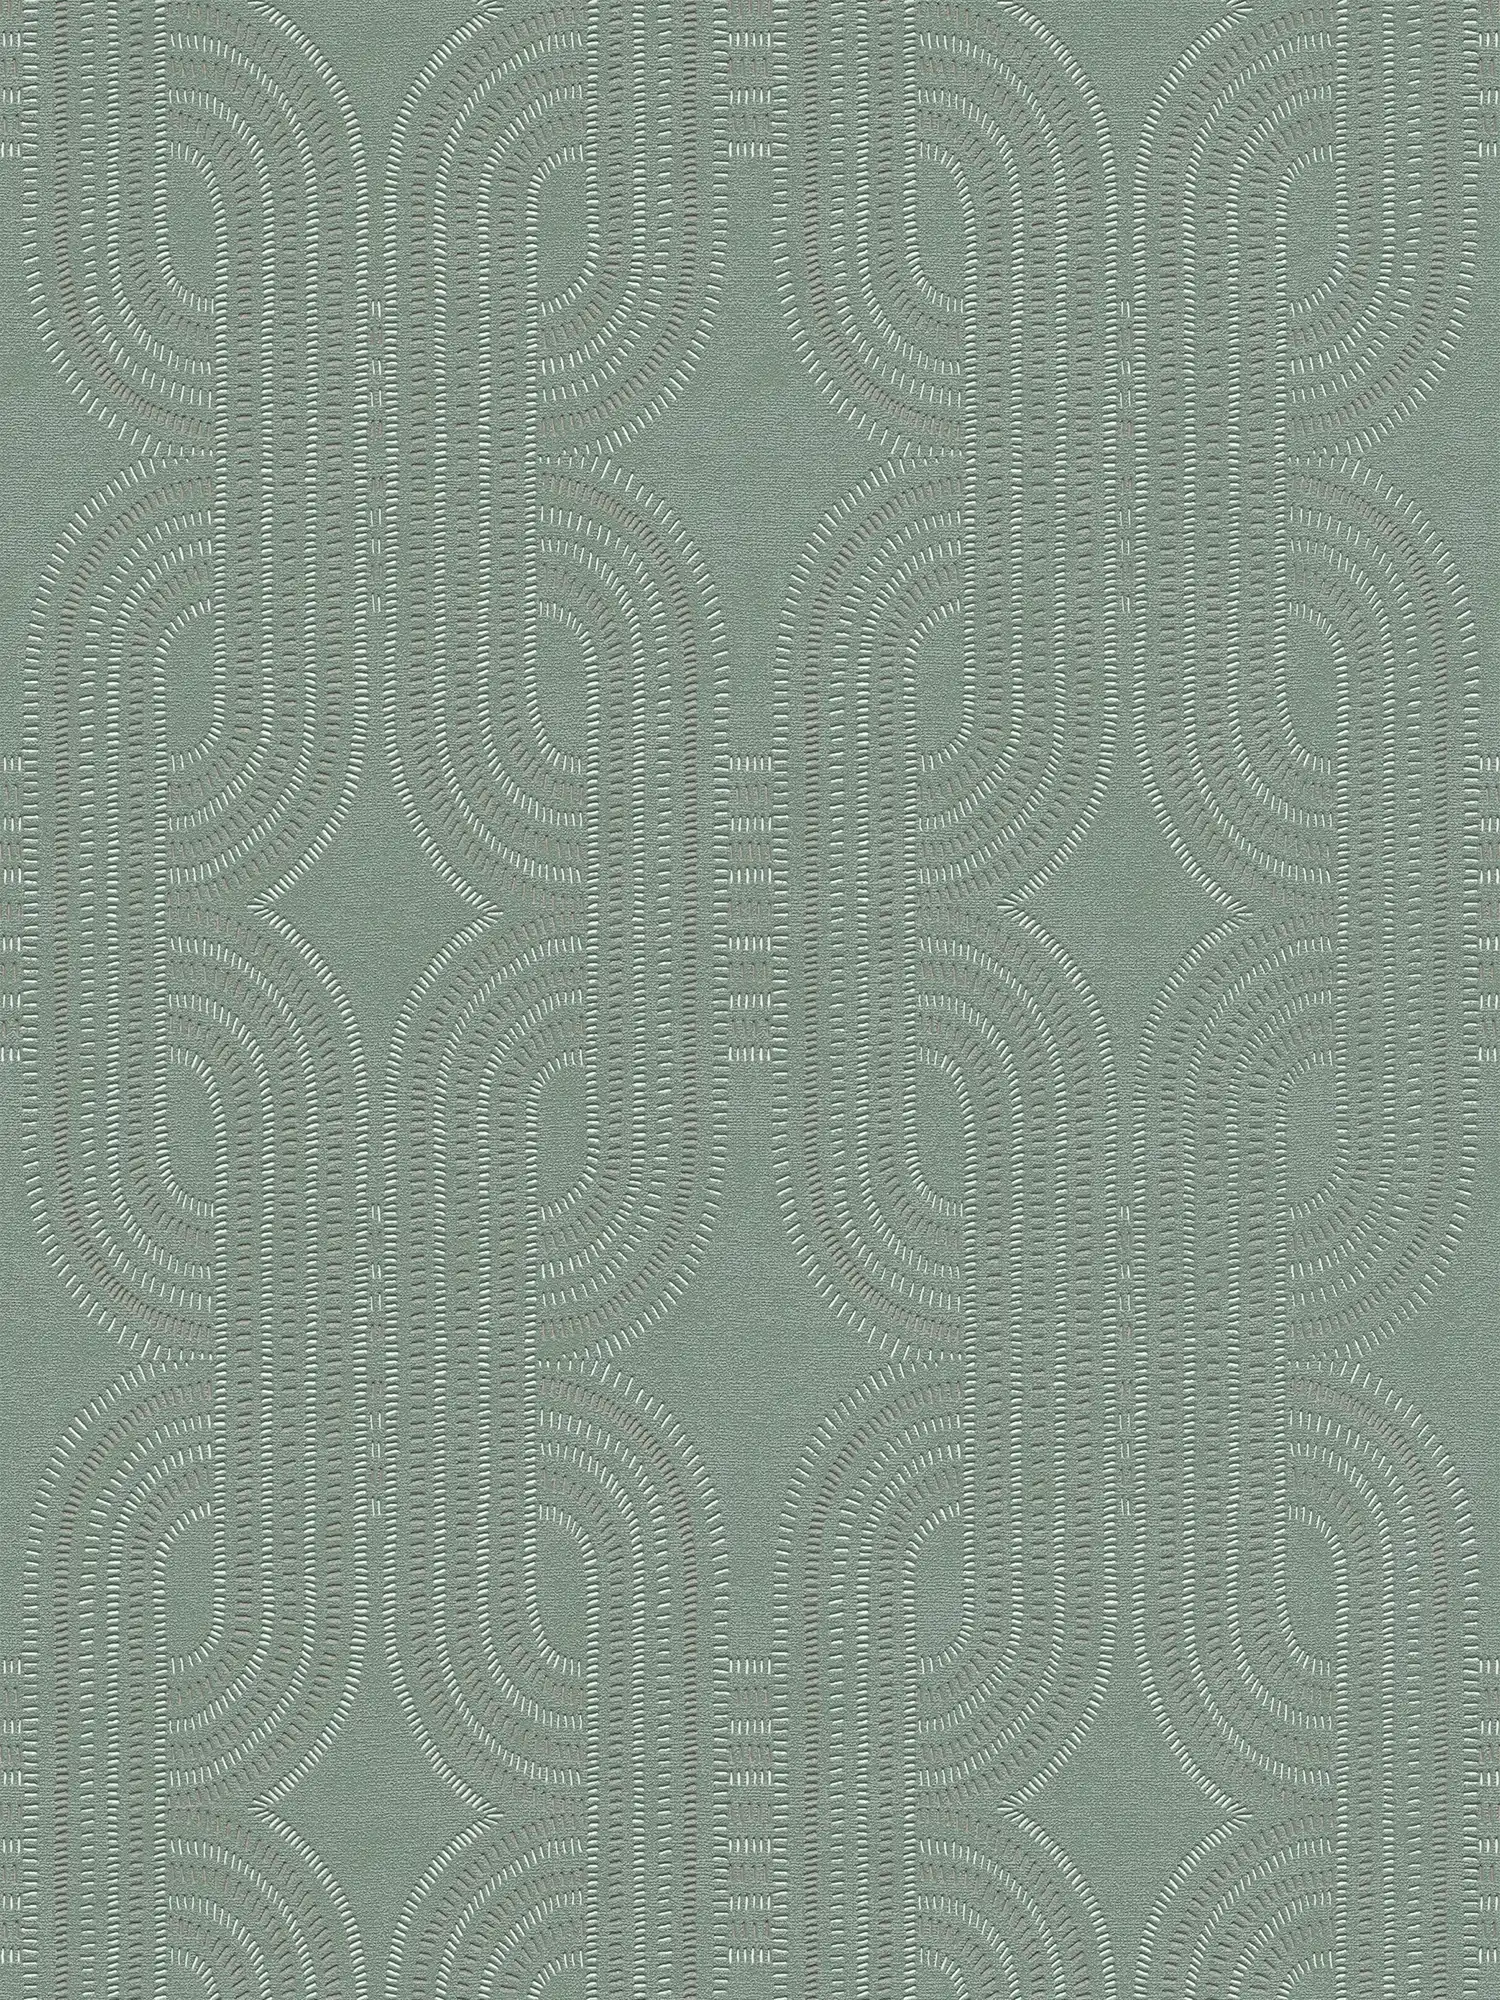 Retro vliesbehang met grafisch patroon - blauw, groen, bruin
